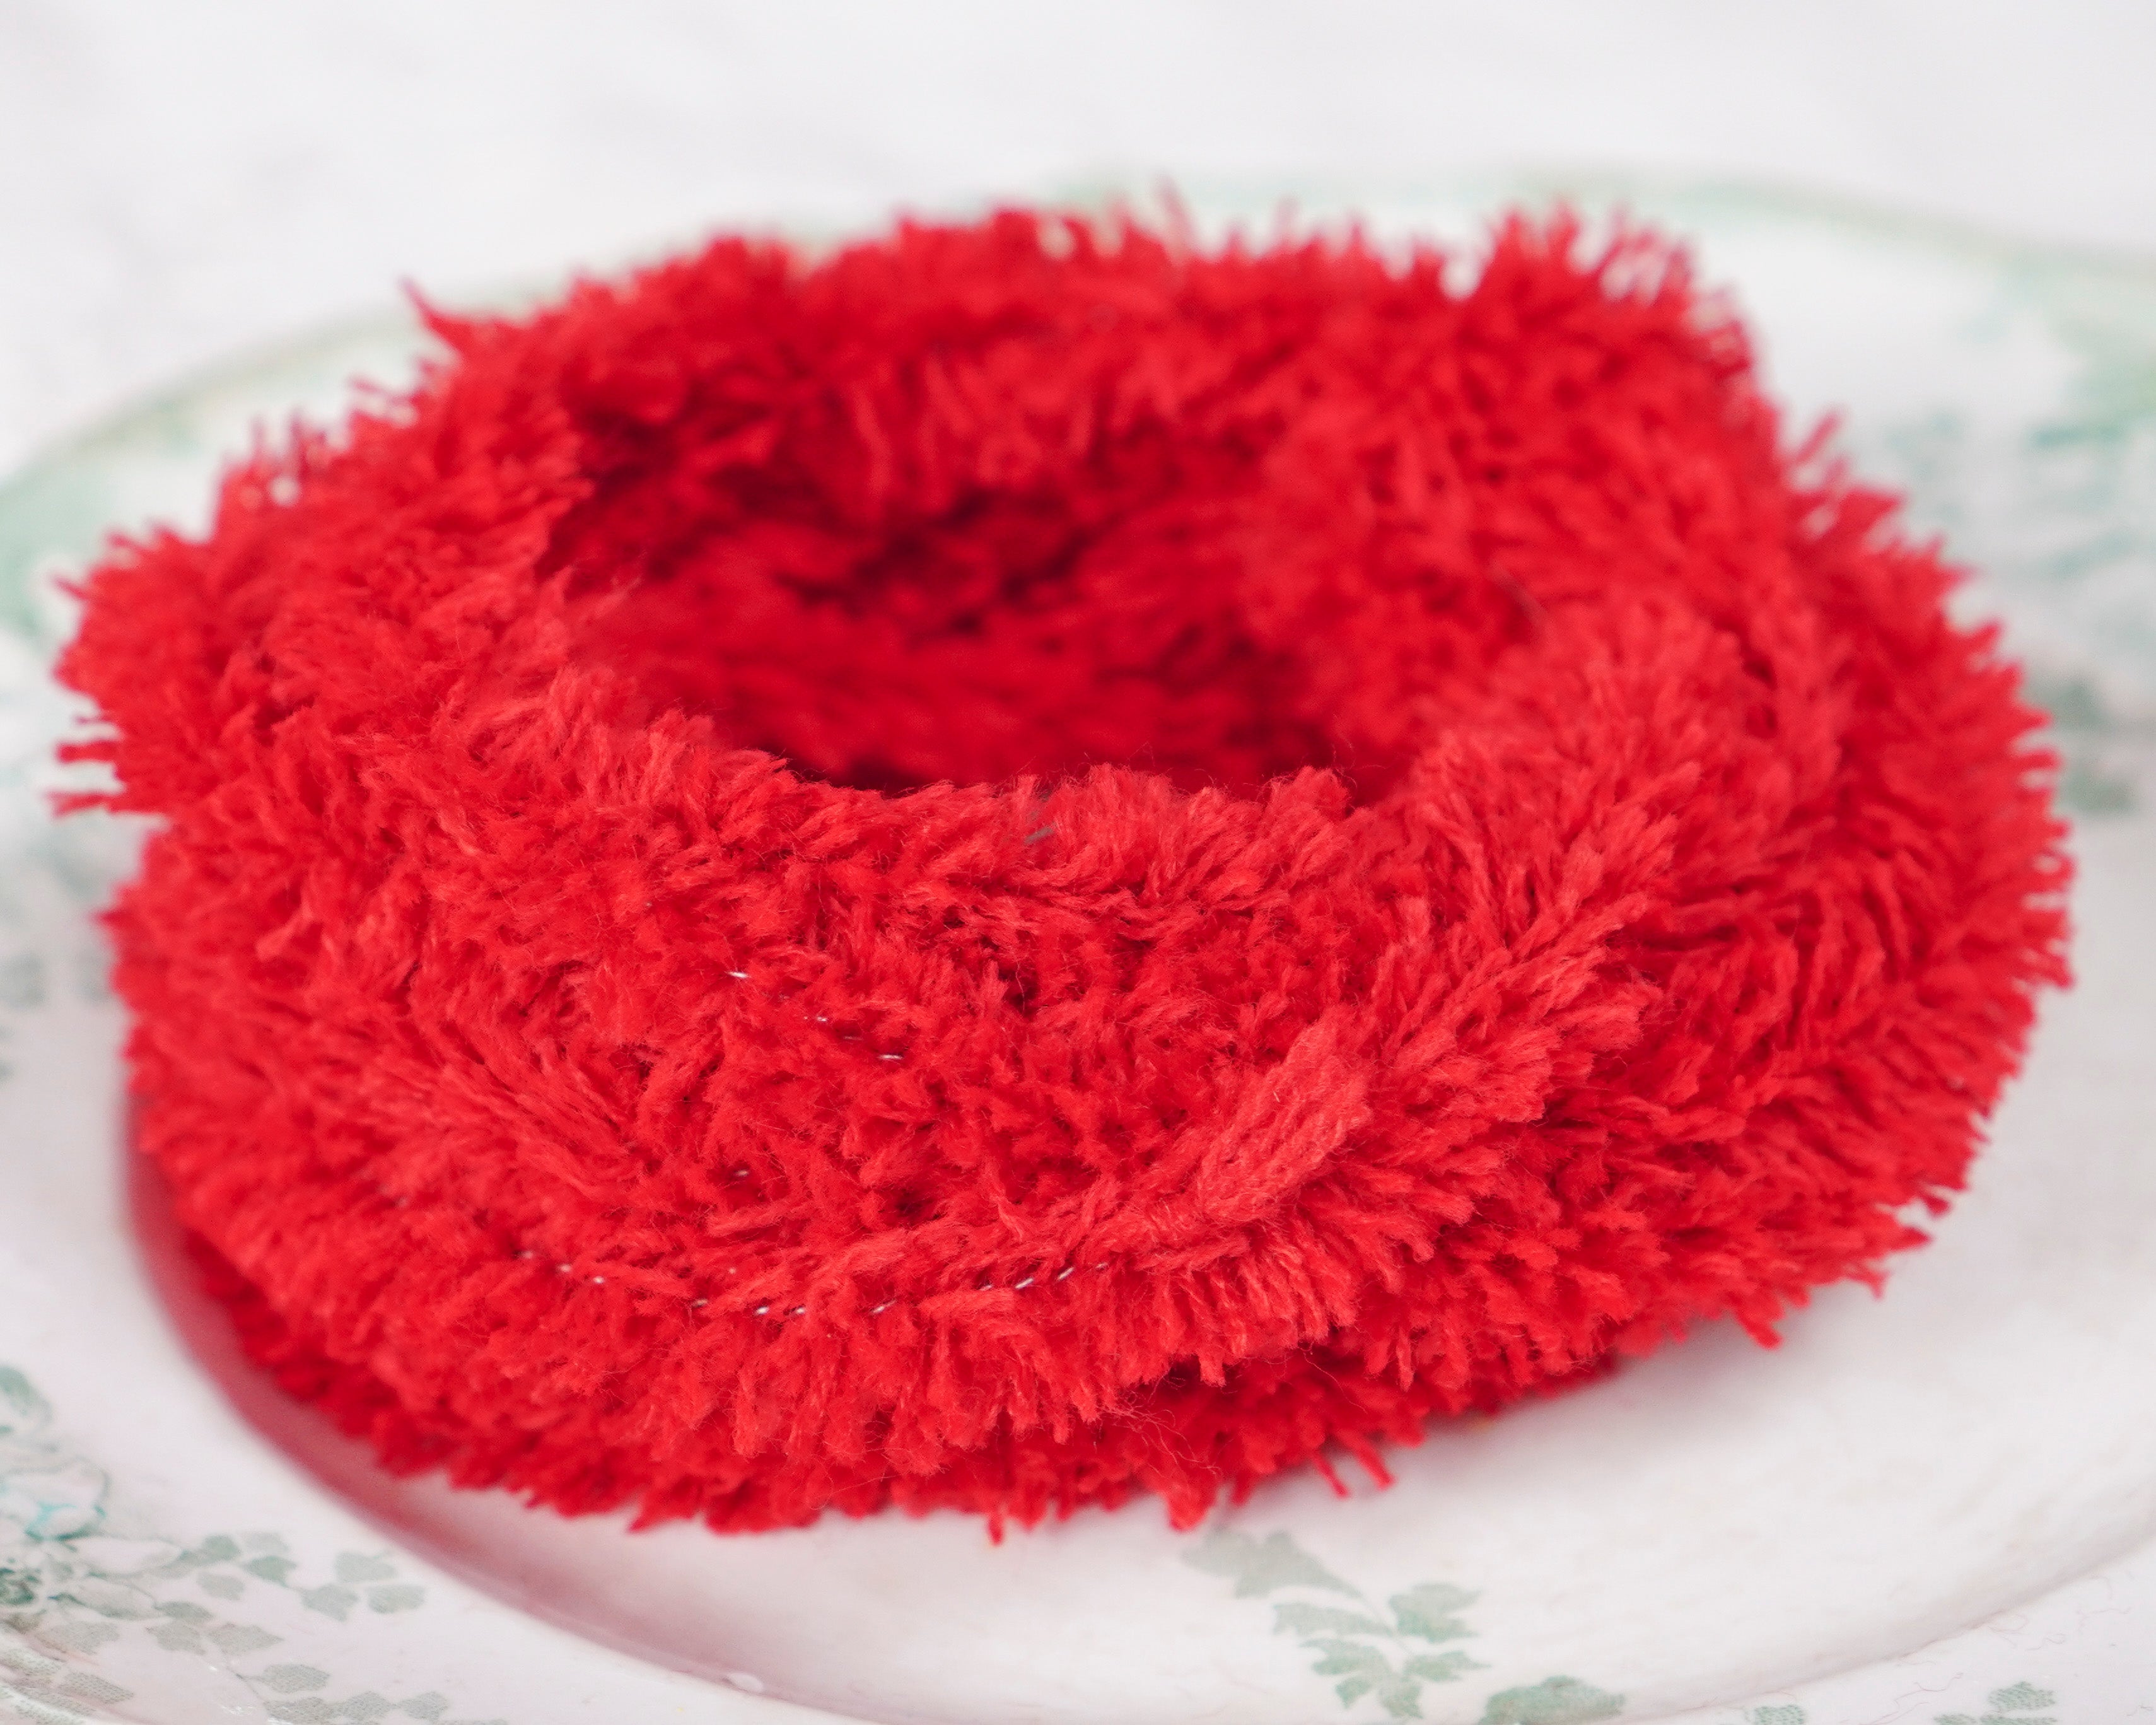 Wired Yarn Trim - Fluffy Brown Yarn Fur Craft Cord, 3 Yds. – Smile